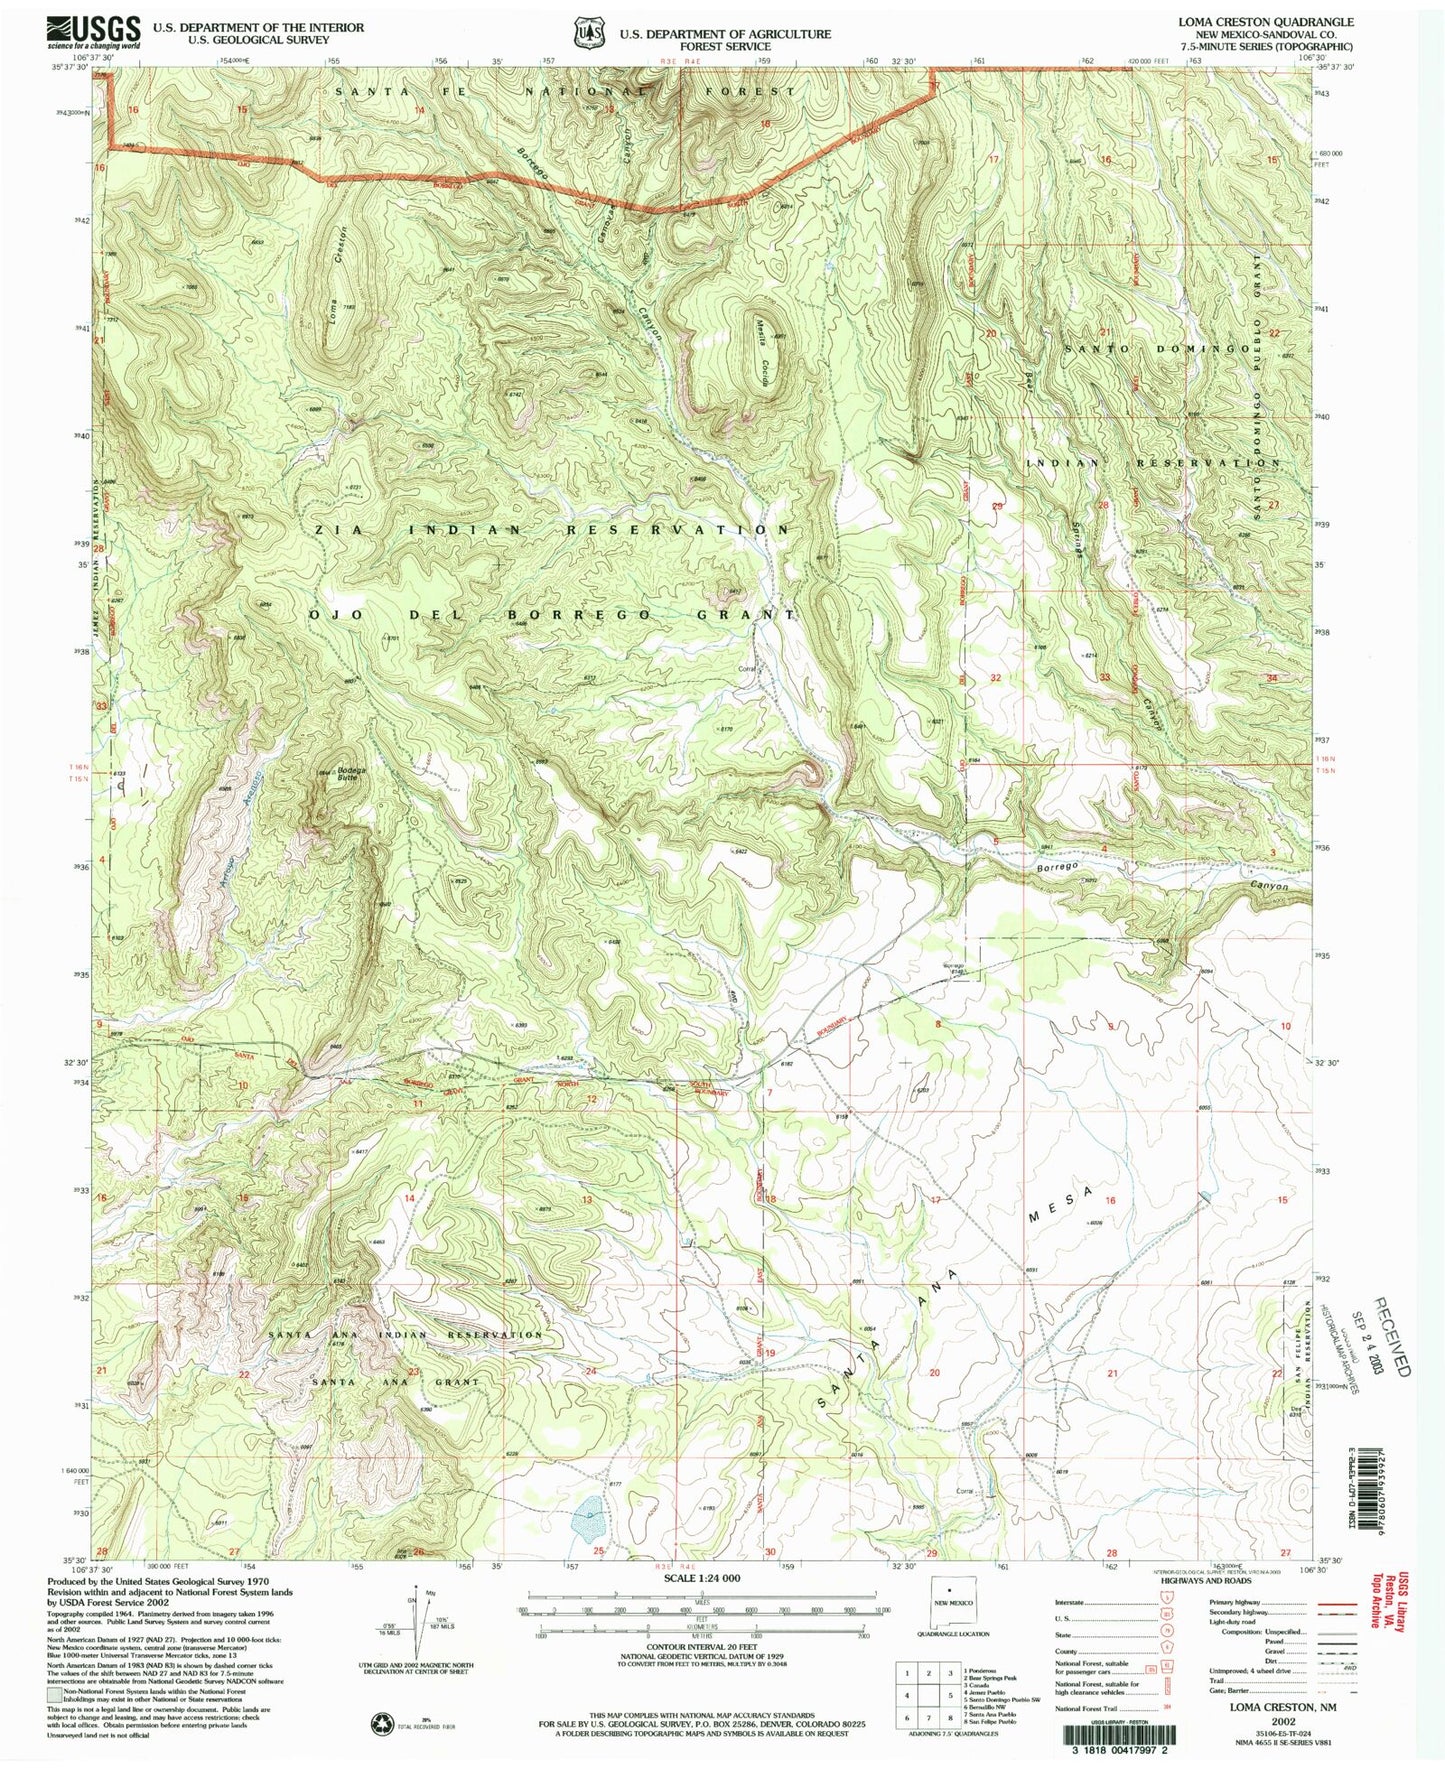 Classic USGS Loma Creston New Mexico 7.5'x7.5' Topo Map Image